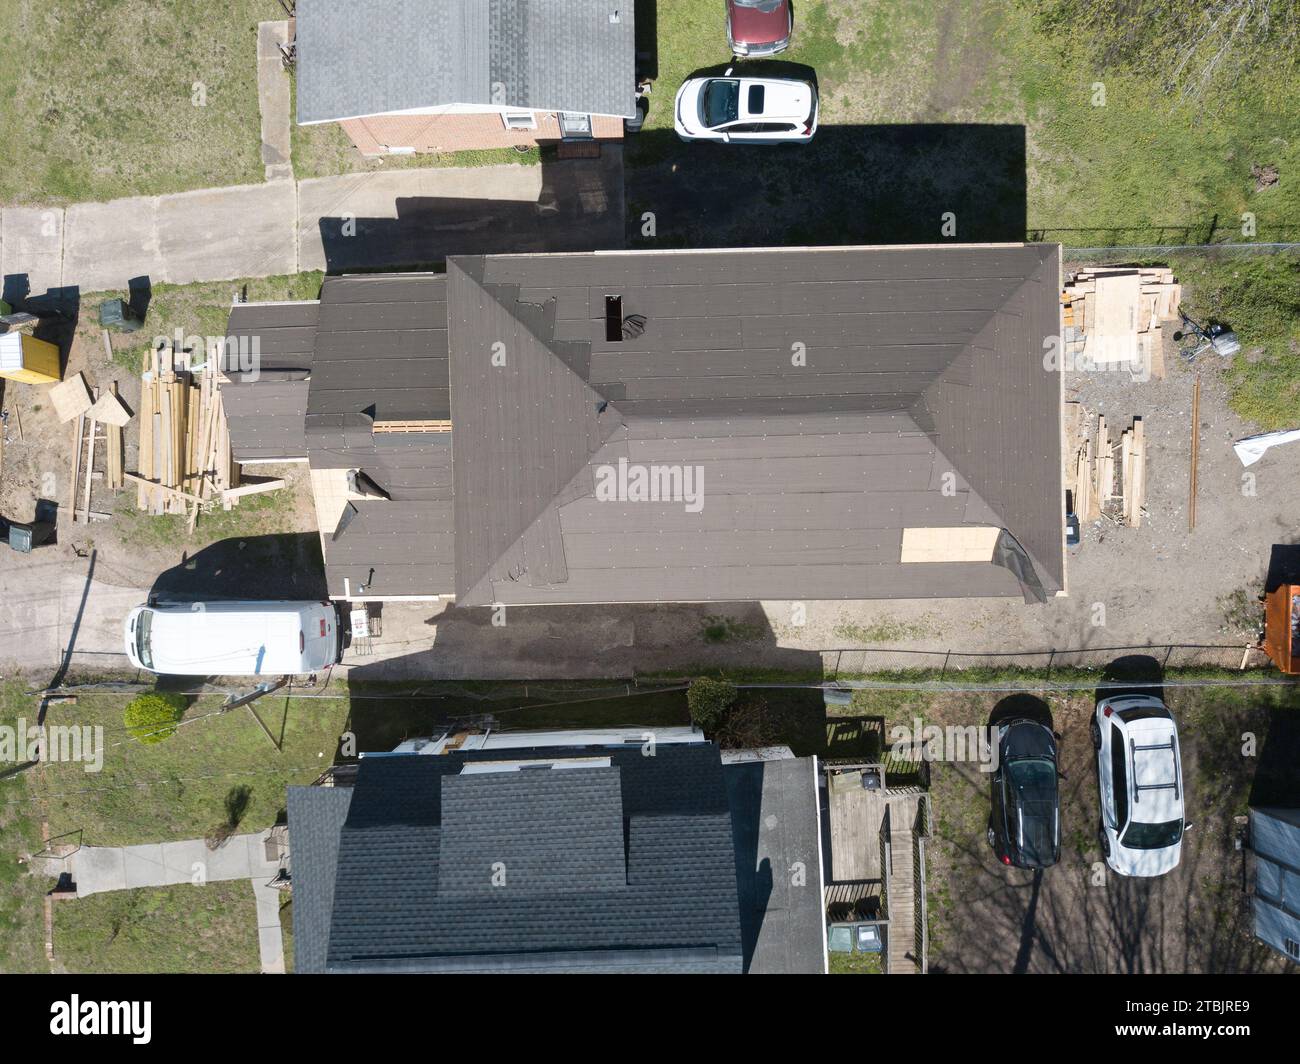 Fotos von Dachdrohnen für Wohngebäude Stockfoto